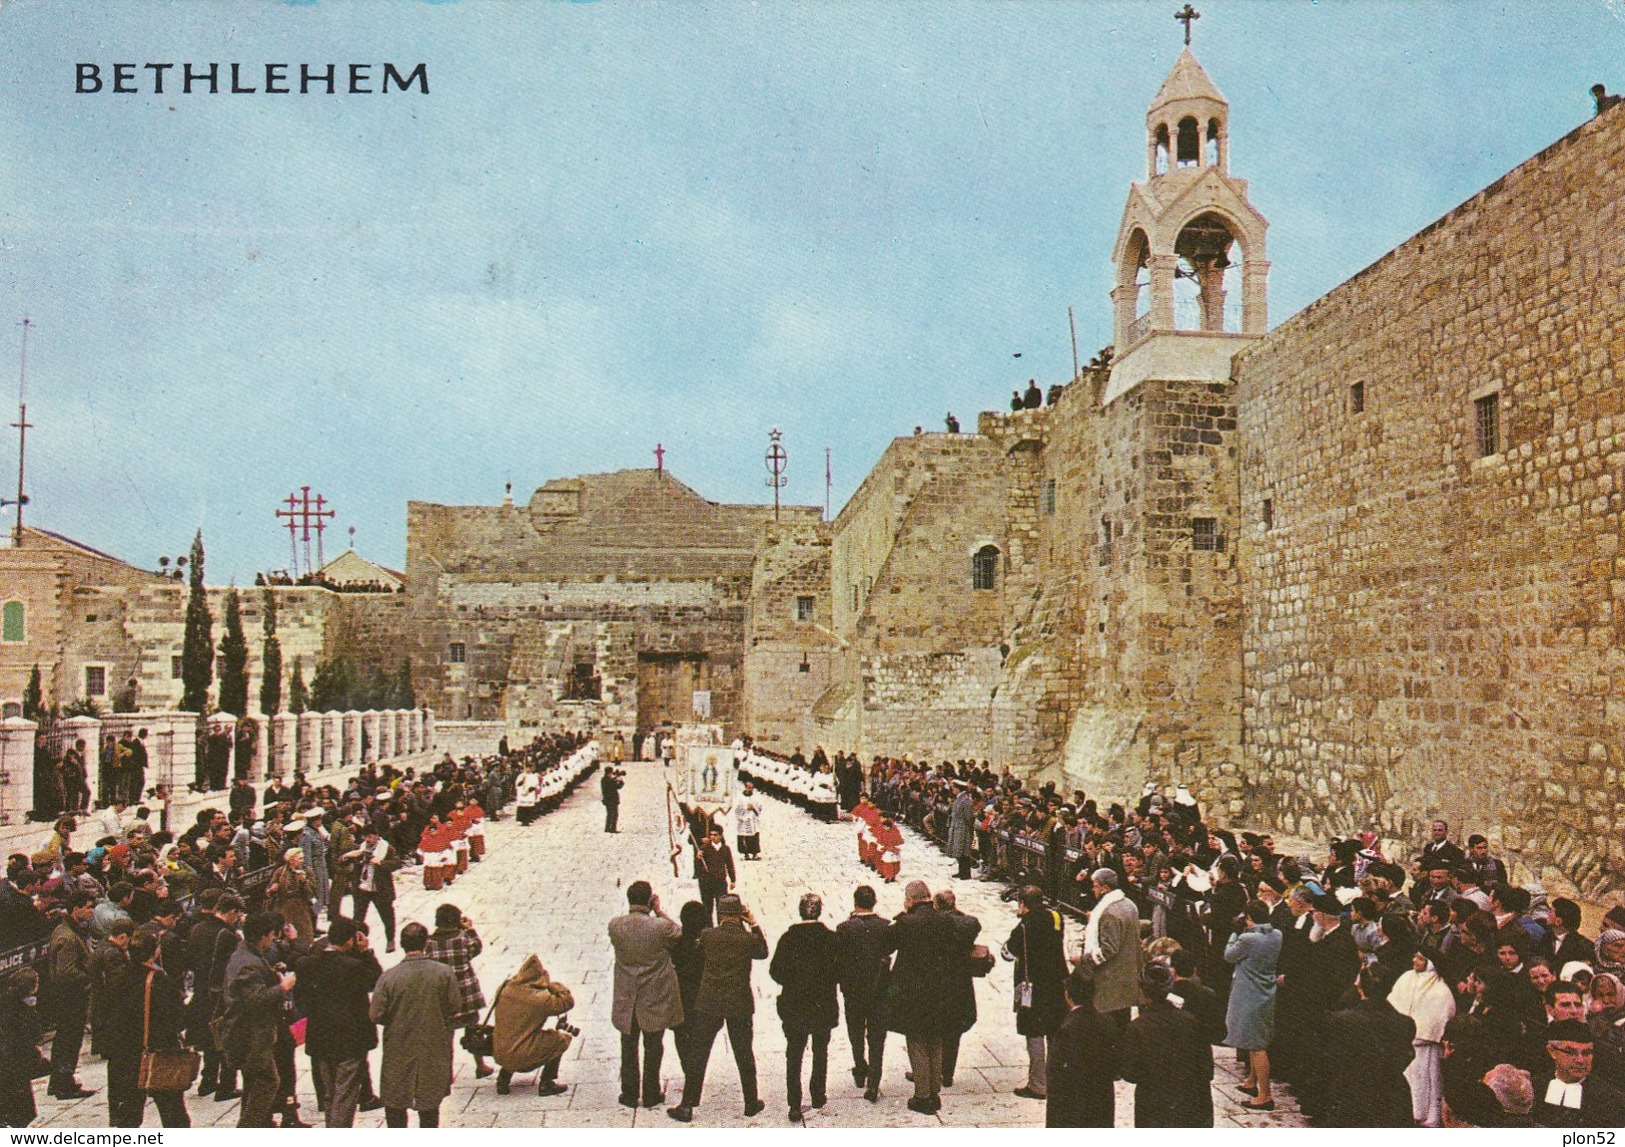 11289-BETHLEHEM-CHURCH OF NATIVITY AT CHRISTMAS PROCESSION-FG - Palestine